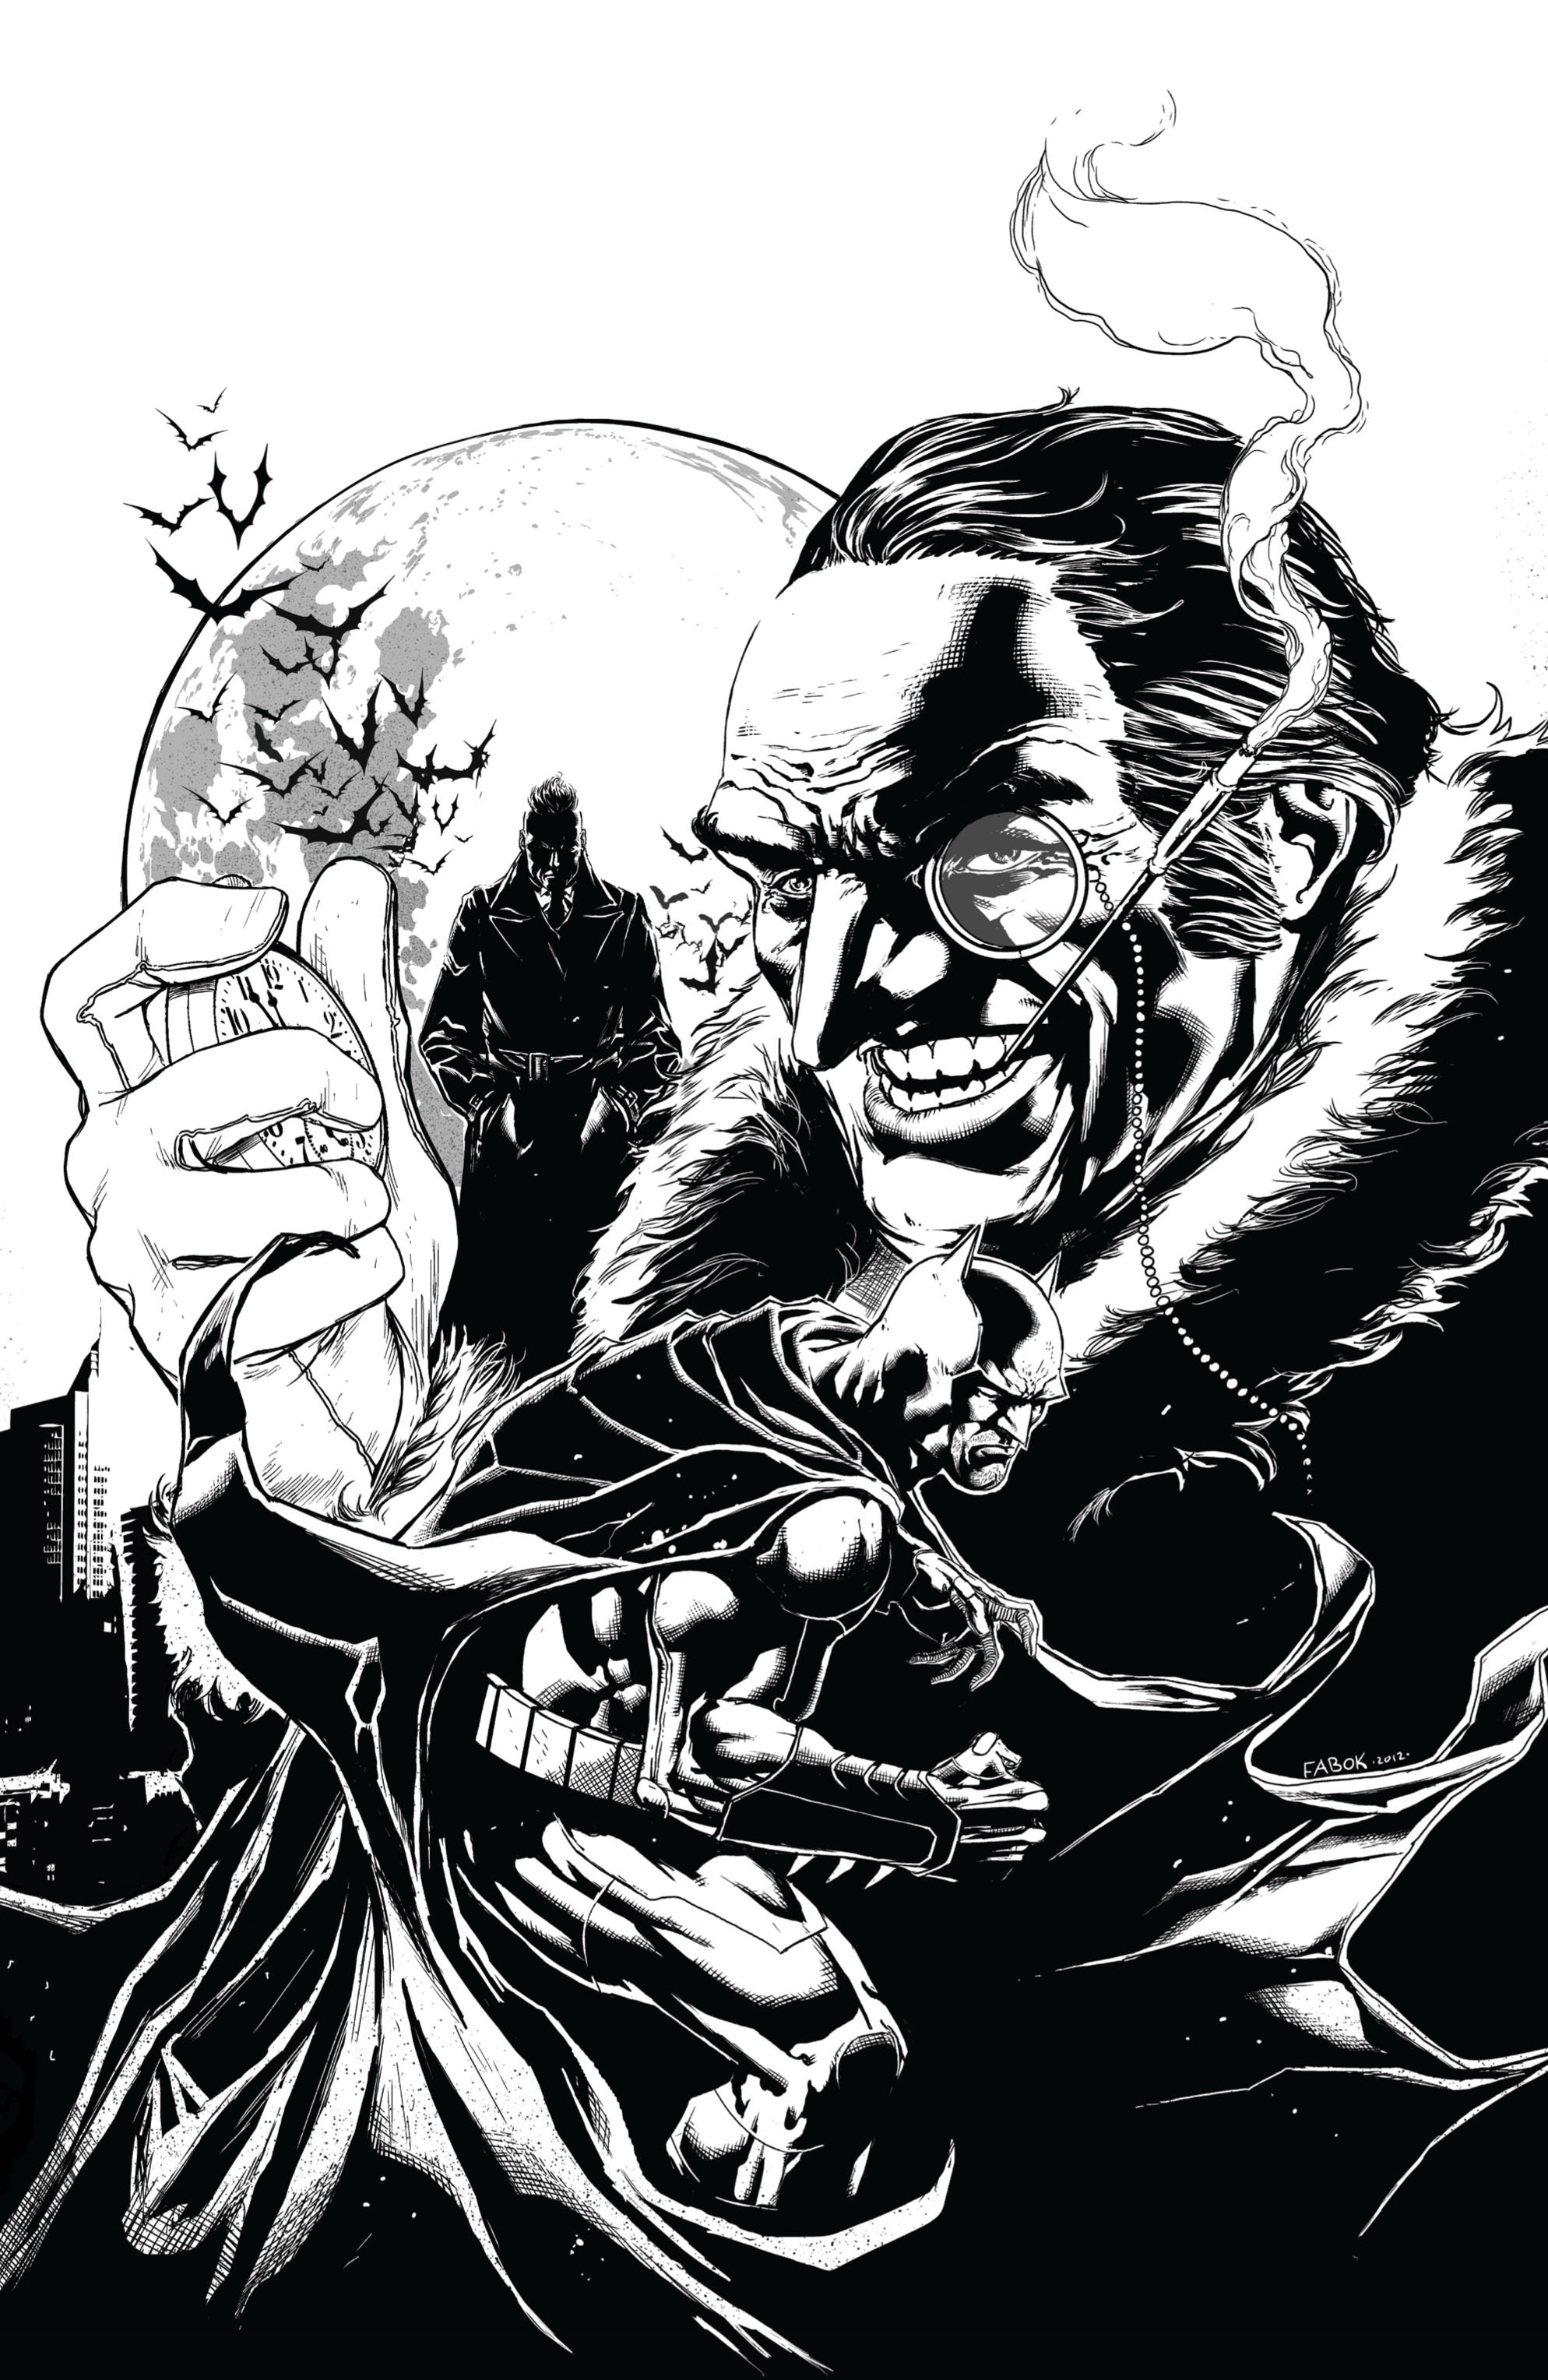 Read online Batman: Detective Comics comic -  Issue # TPB 3 - 6